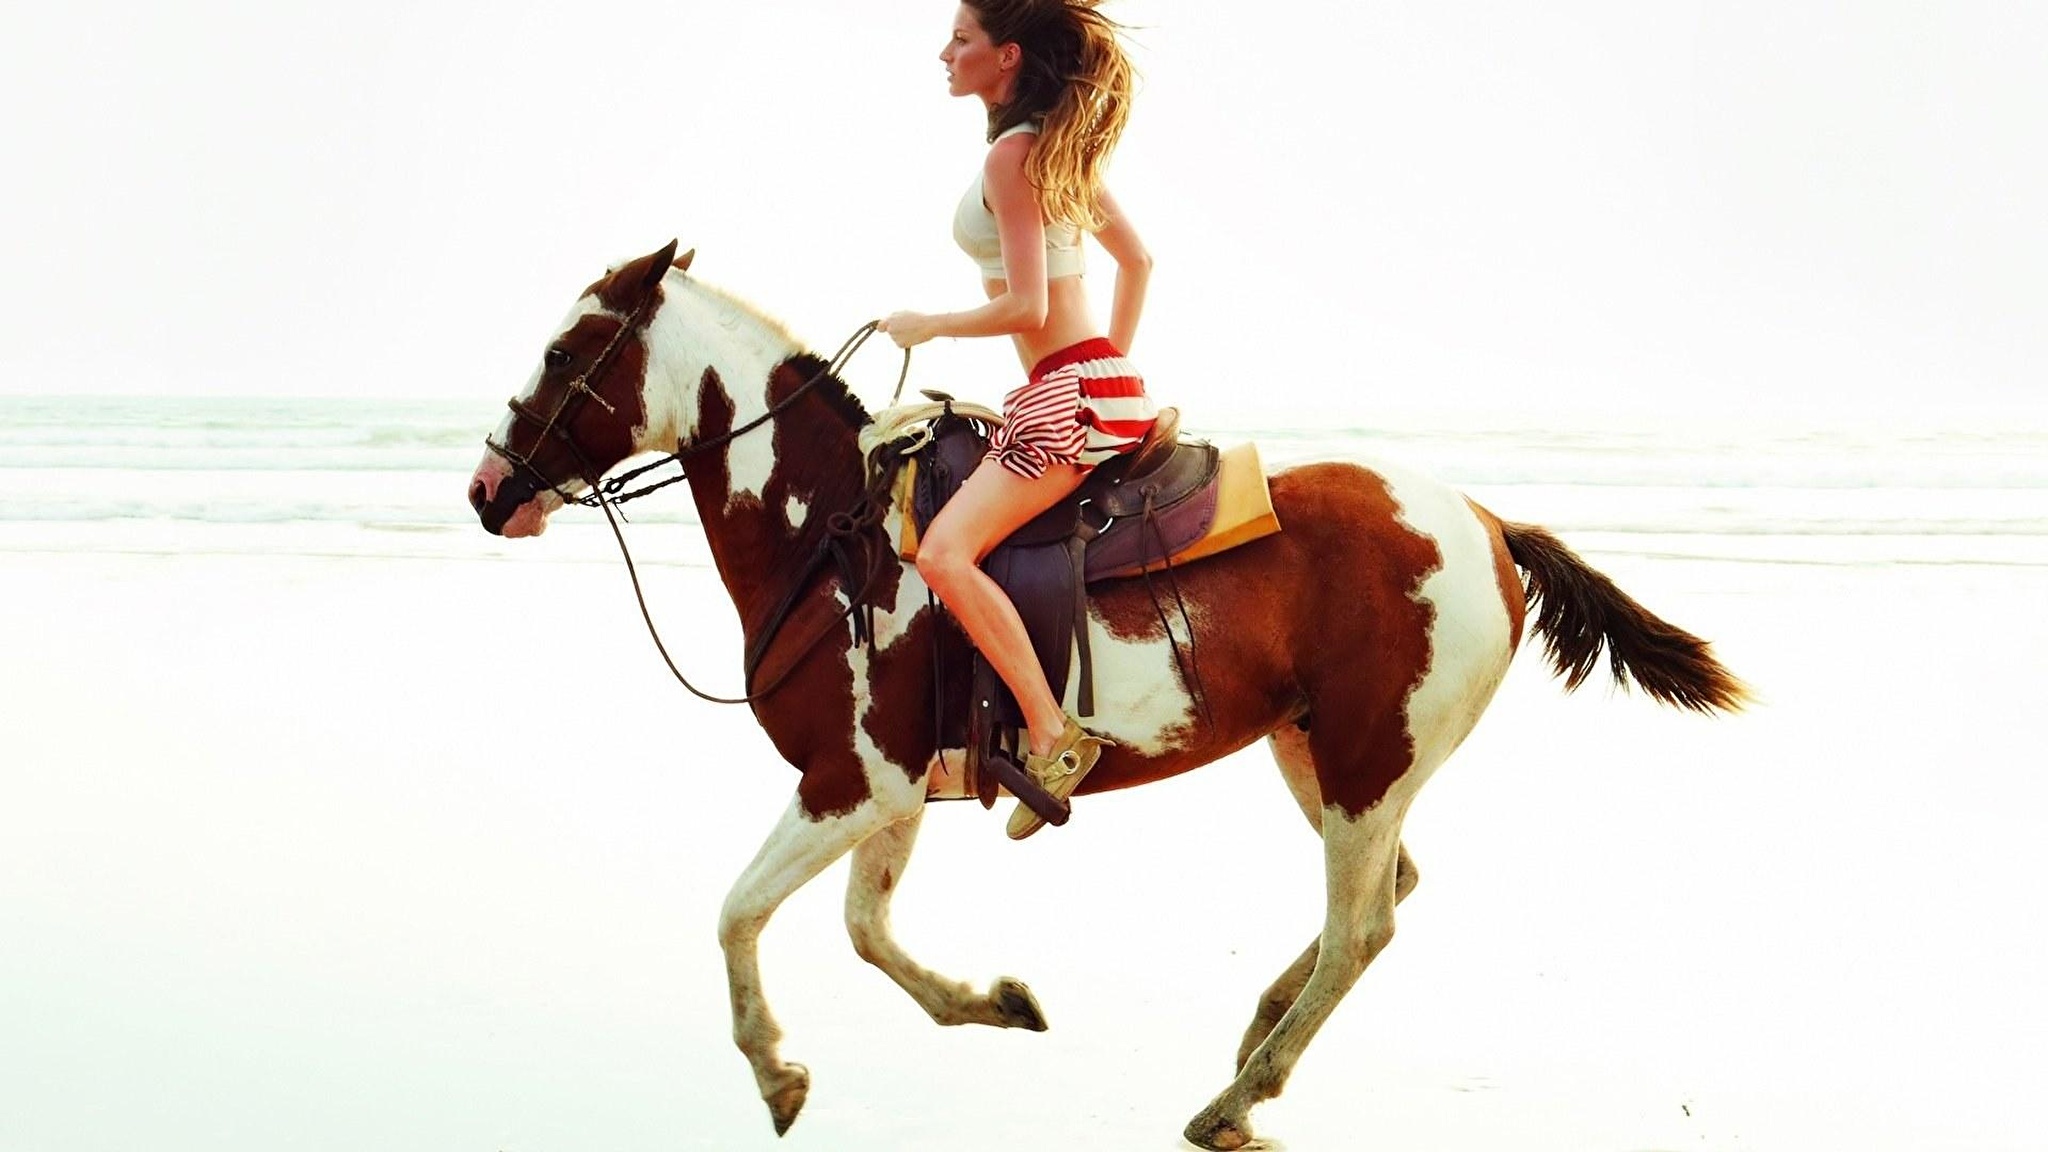 Проскачу на коне. Жизель Бюндхен на коне. Жизель Бундхен на лошади. Девушка на коне. Девушка с лошадью.